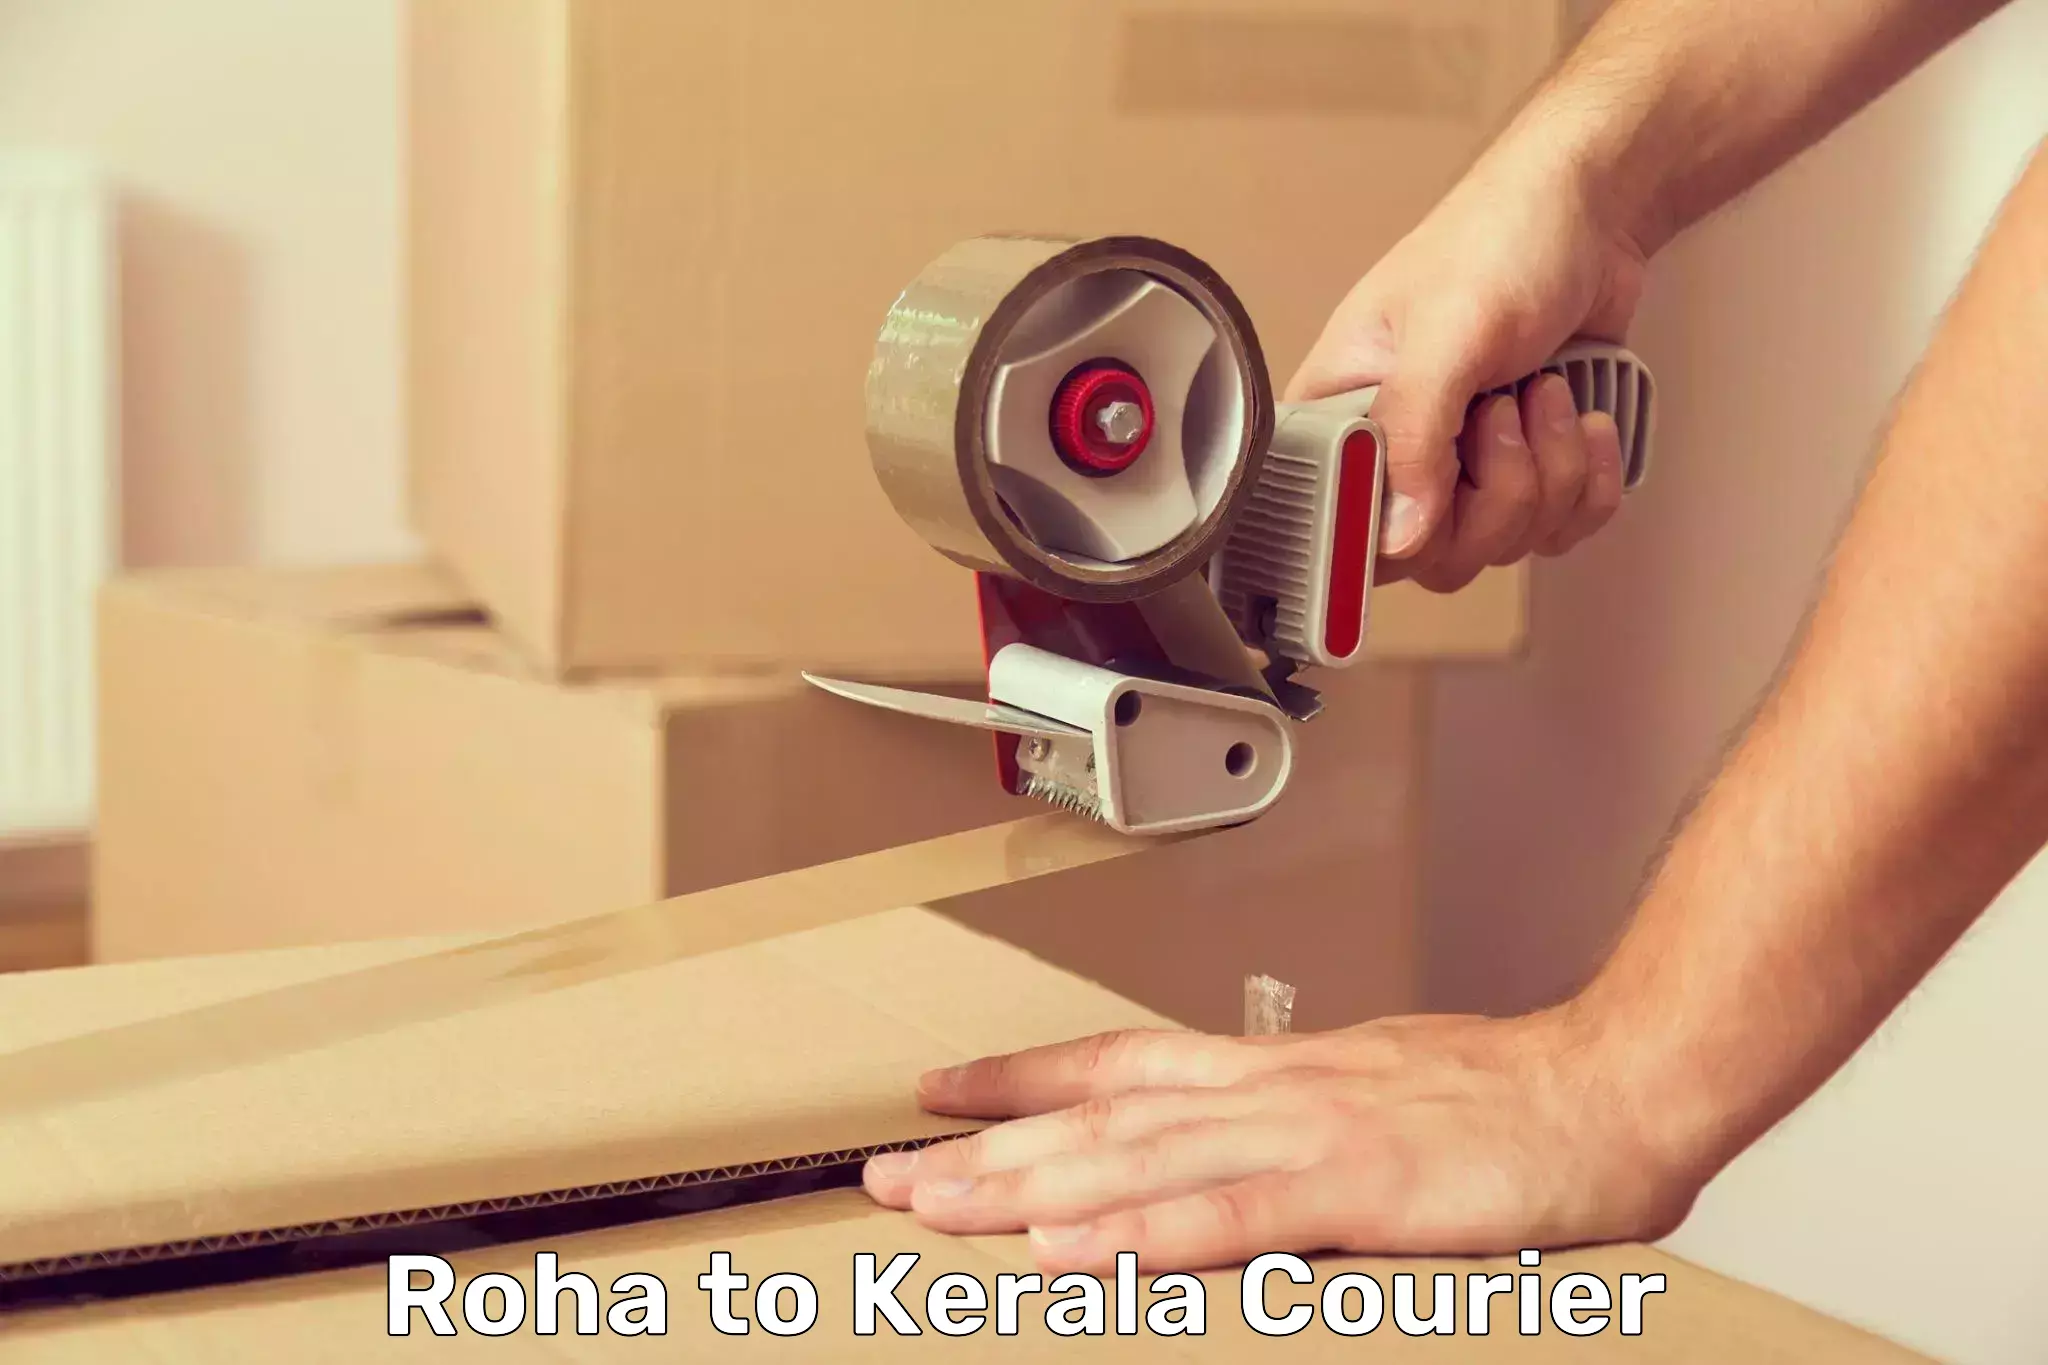 High-capacity shipping options Roha to Kerala